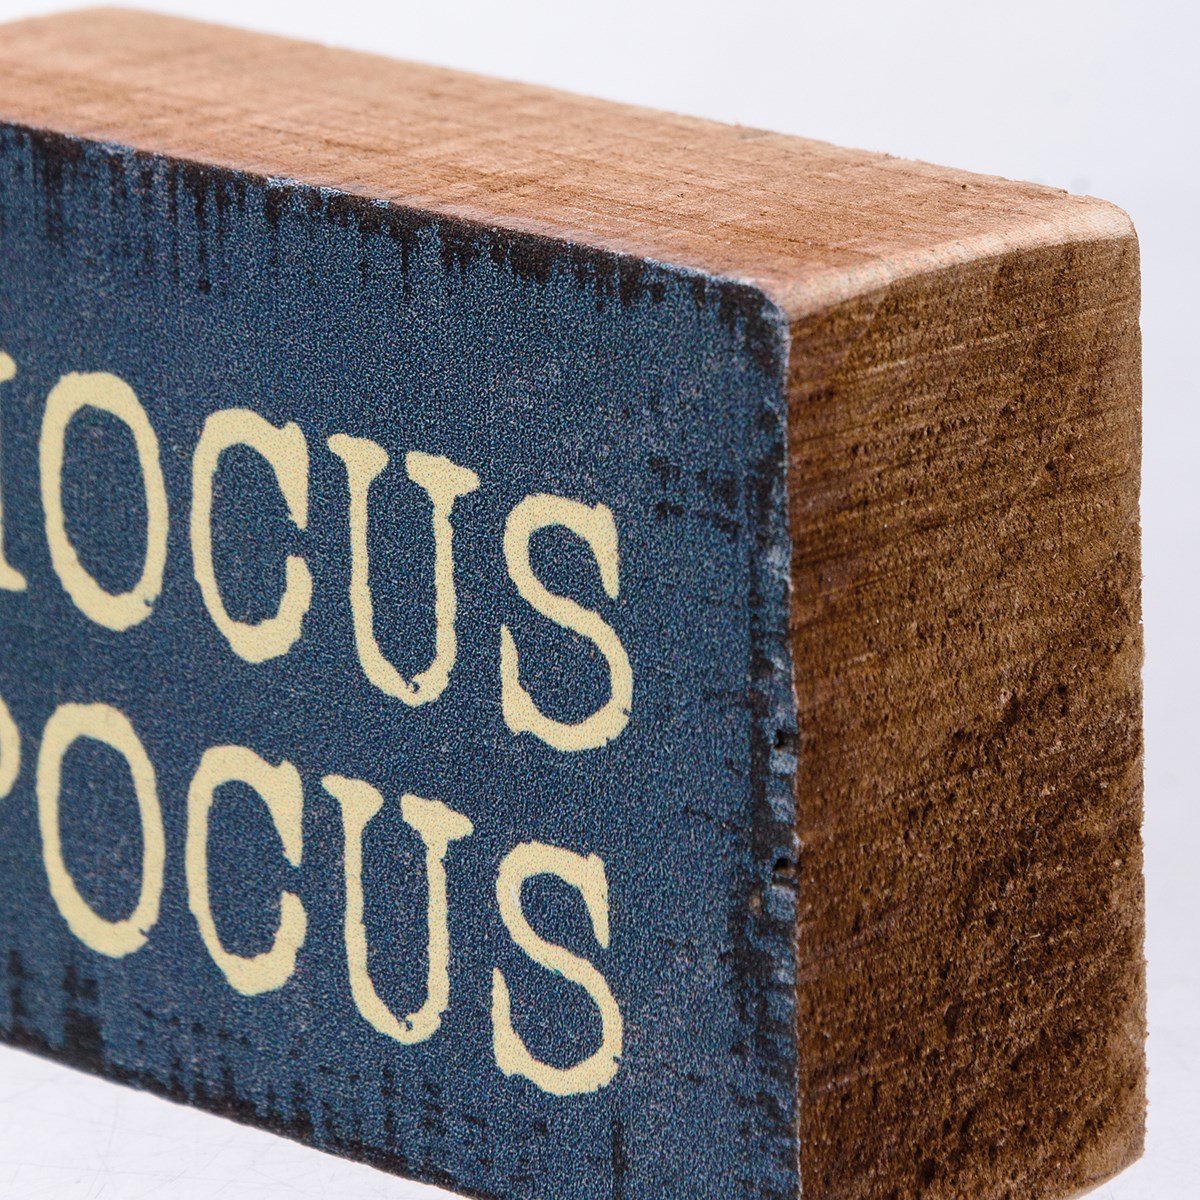 Block Sign - Hocus Pocus - 3" x 2" x 1" - Wood